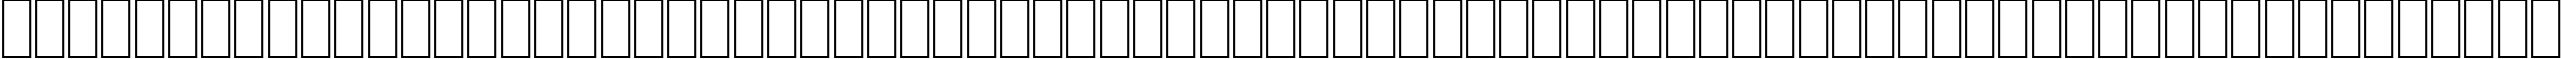 Пример написания английского алфавита шрифтом AGA Arabesque